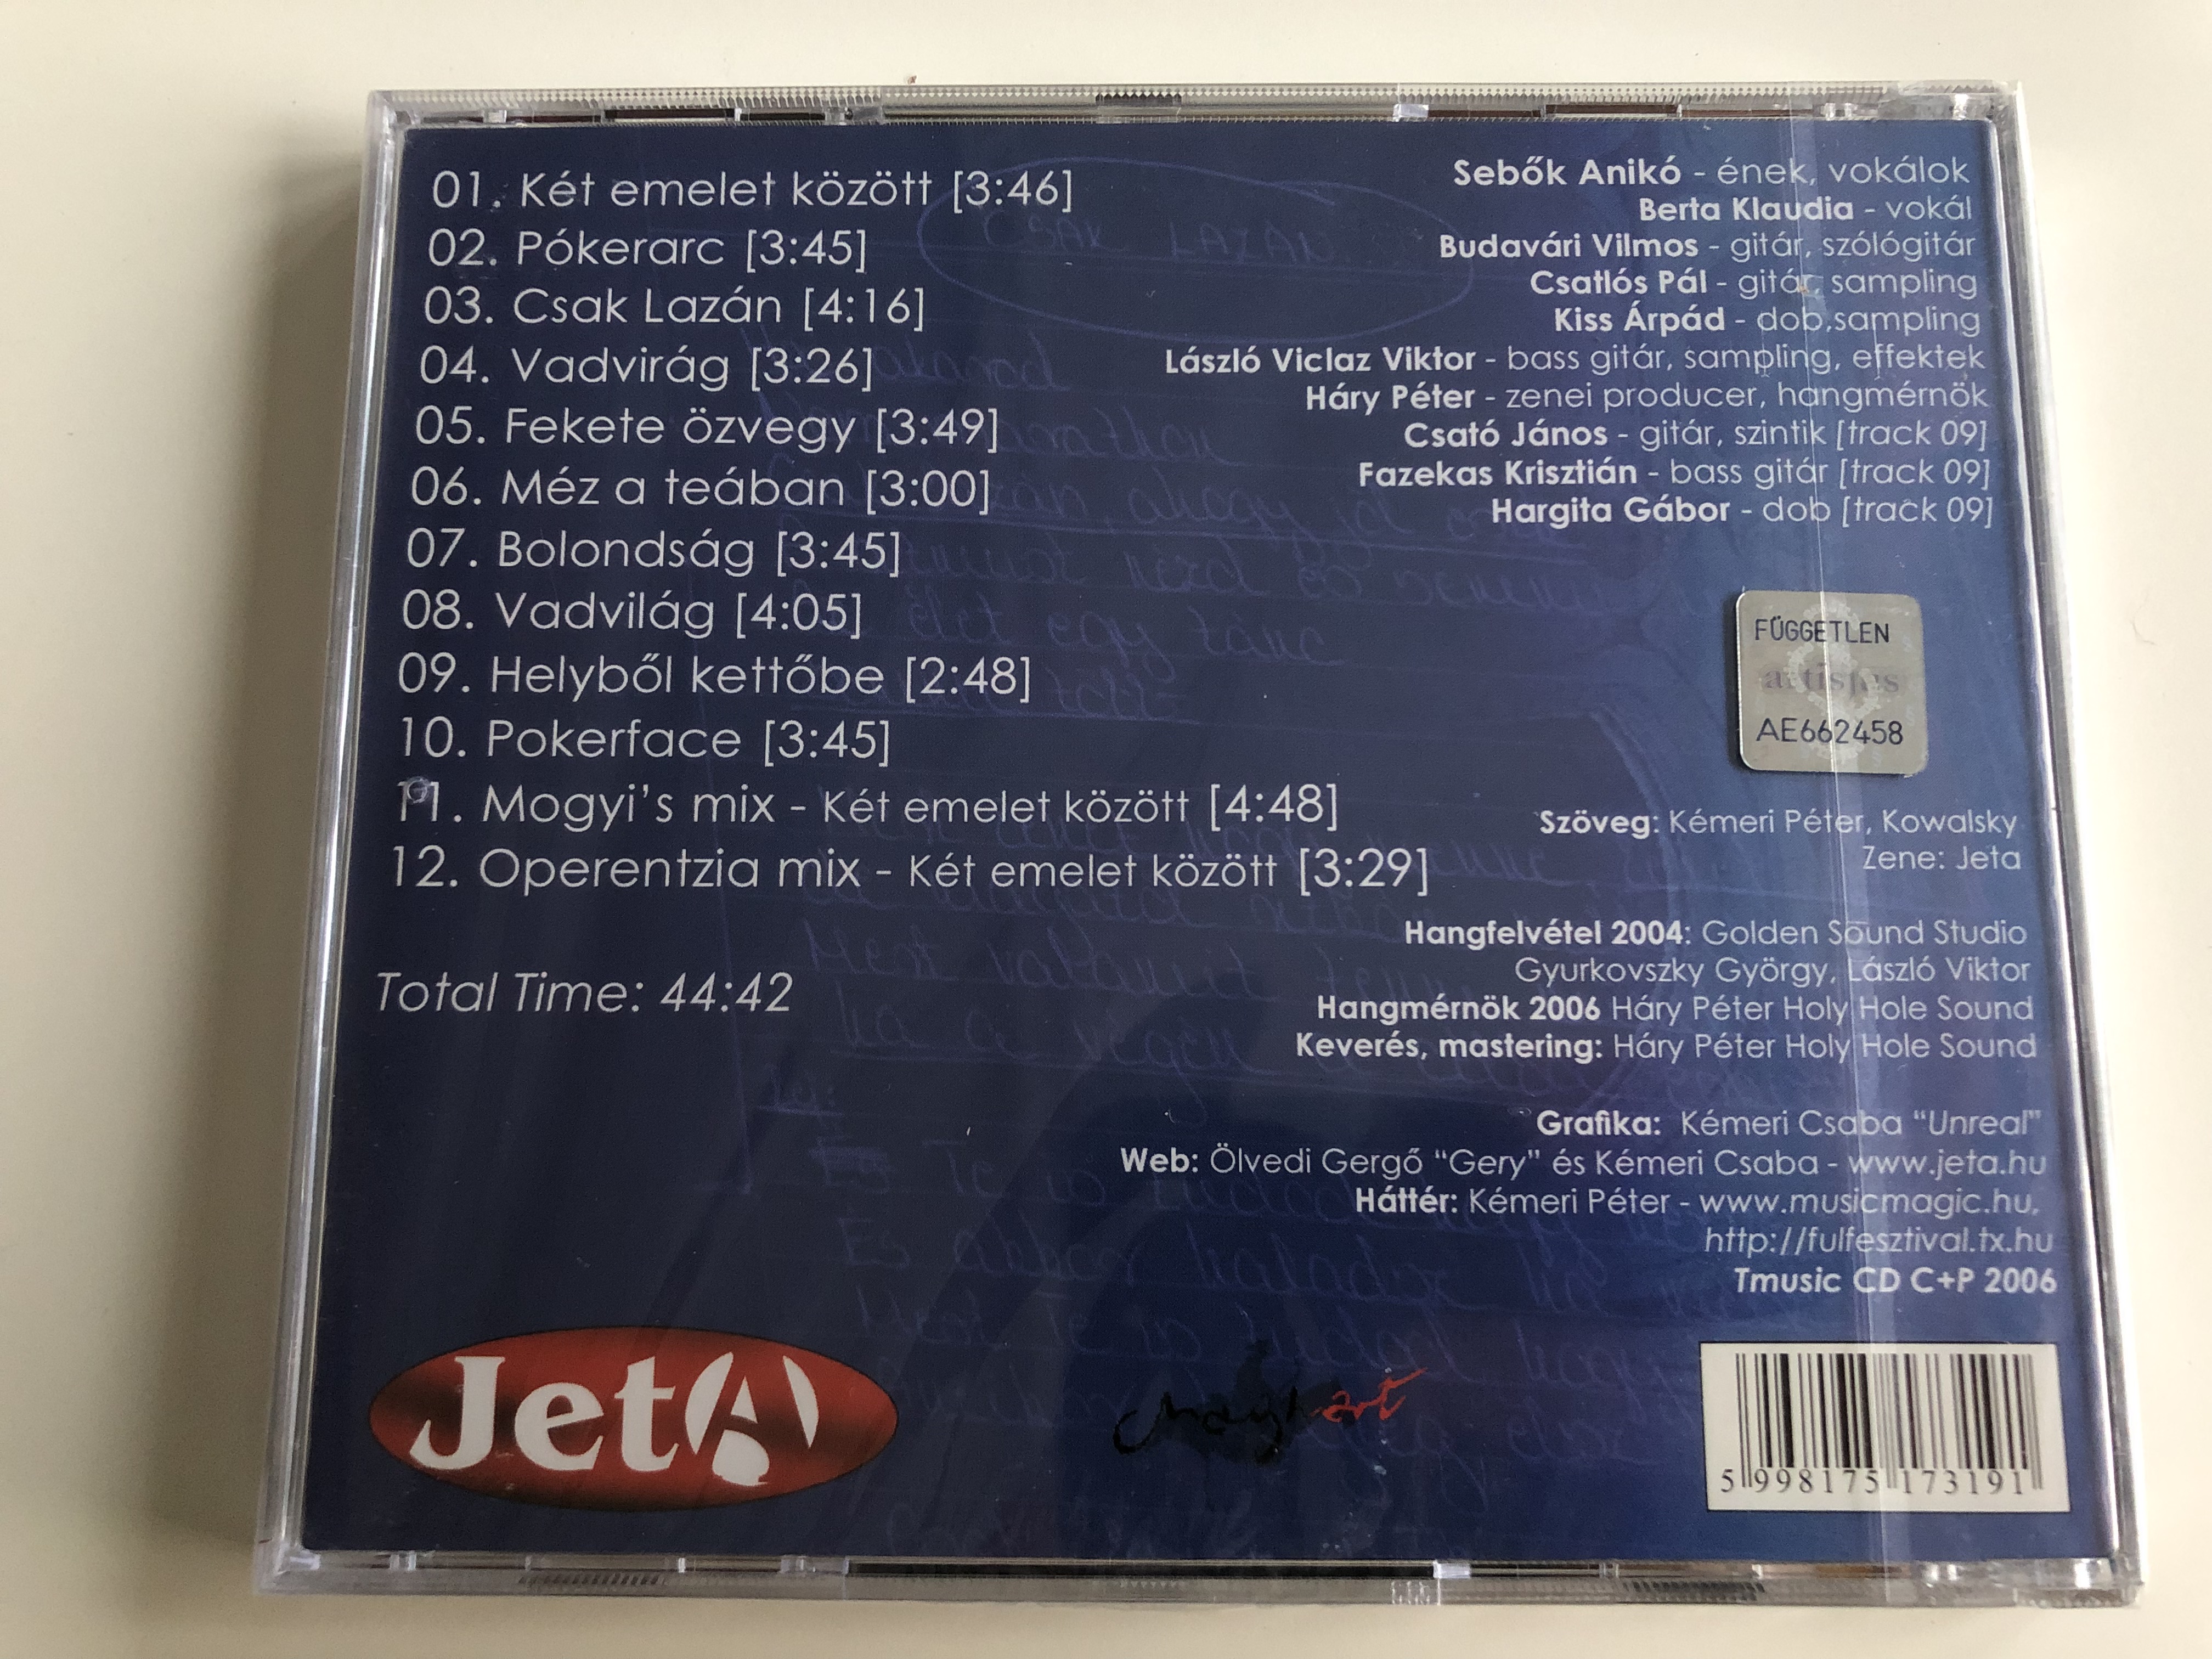 jeta-k-t-emelet-k-z-tt-csak-laz-n-vadvir-g-fekete-zvegy-m-z-a-te-ban-helyb-l-kett-be-operentzia-mix-audio-cd-2004-2-.jpg